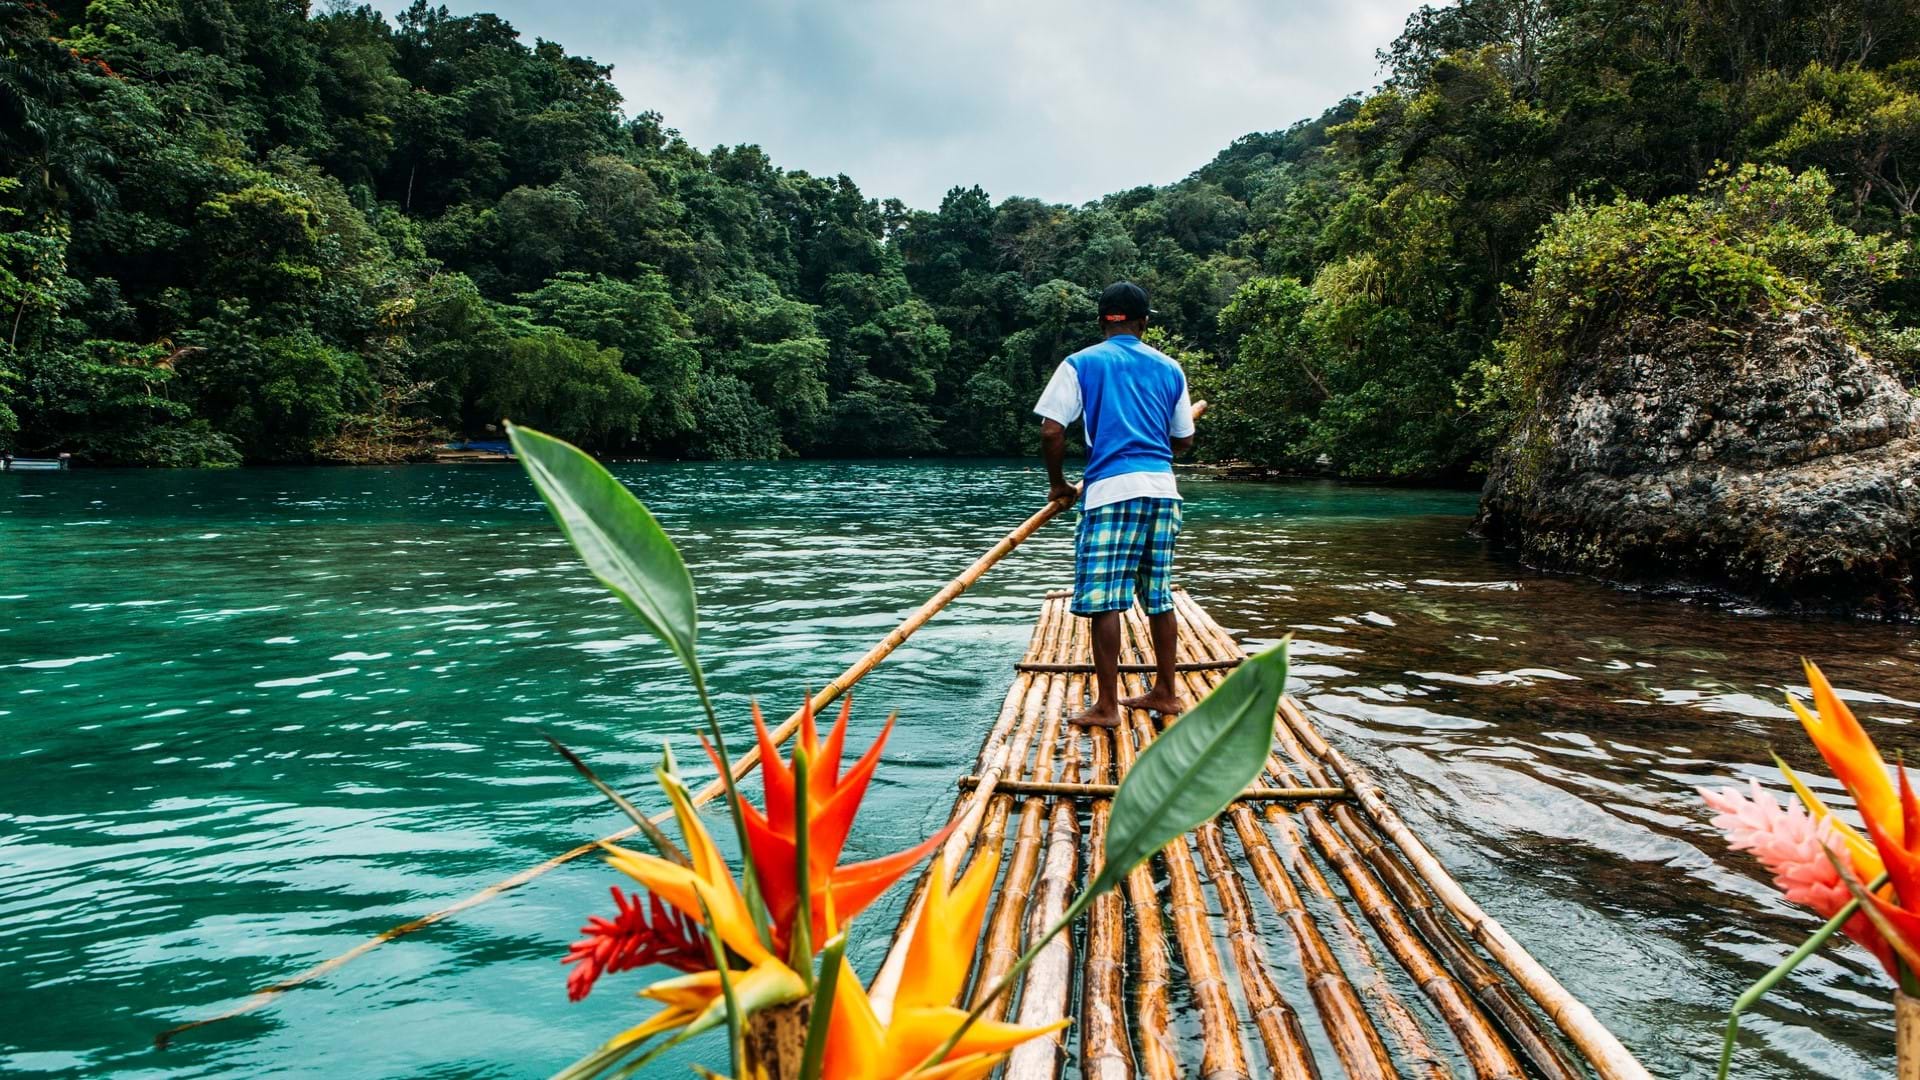 Bamboo laguna na Jamajci, obilazak na drvenom splavu napravljenom od banbusovih debla.